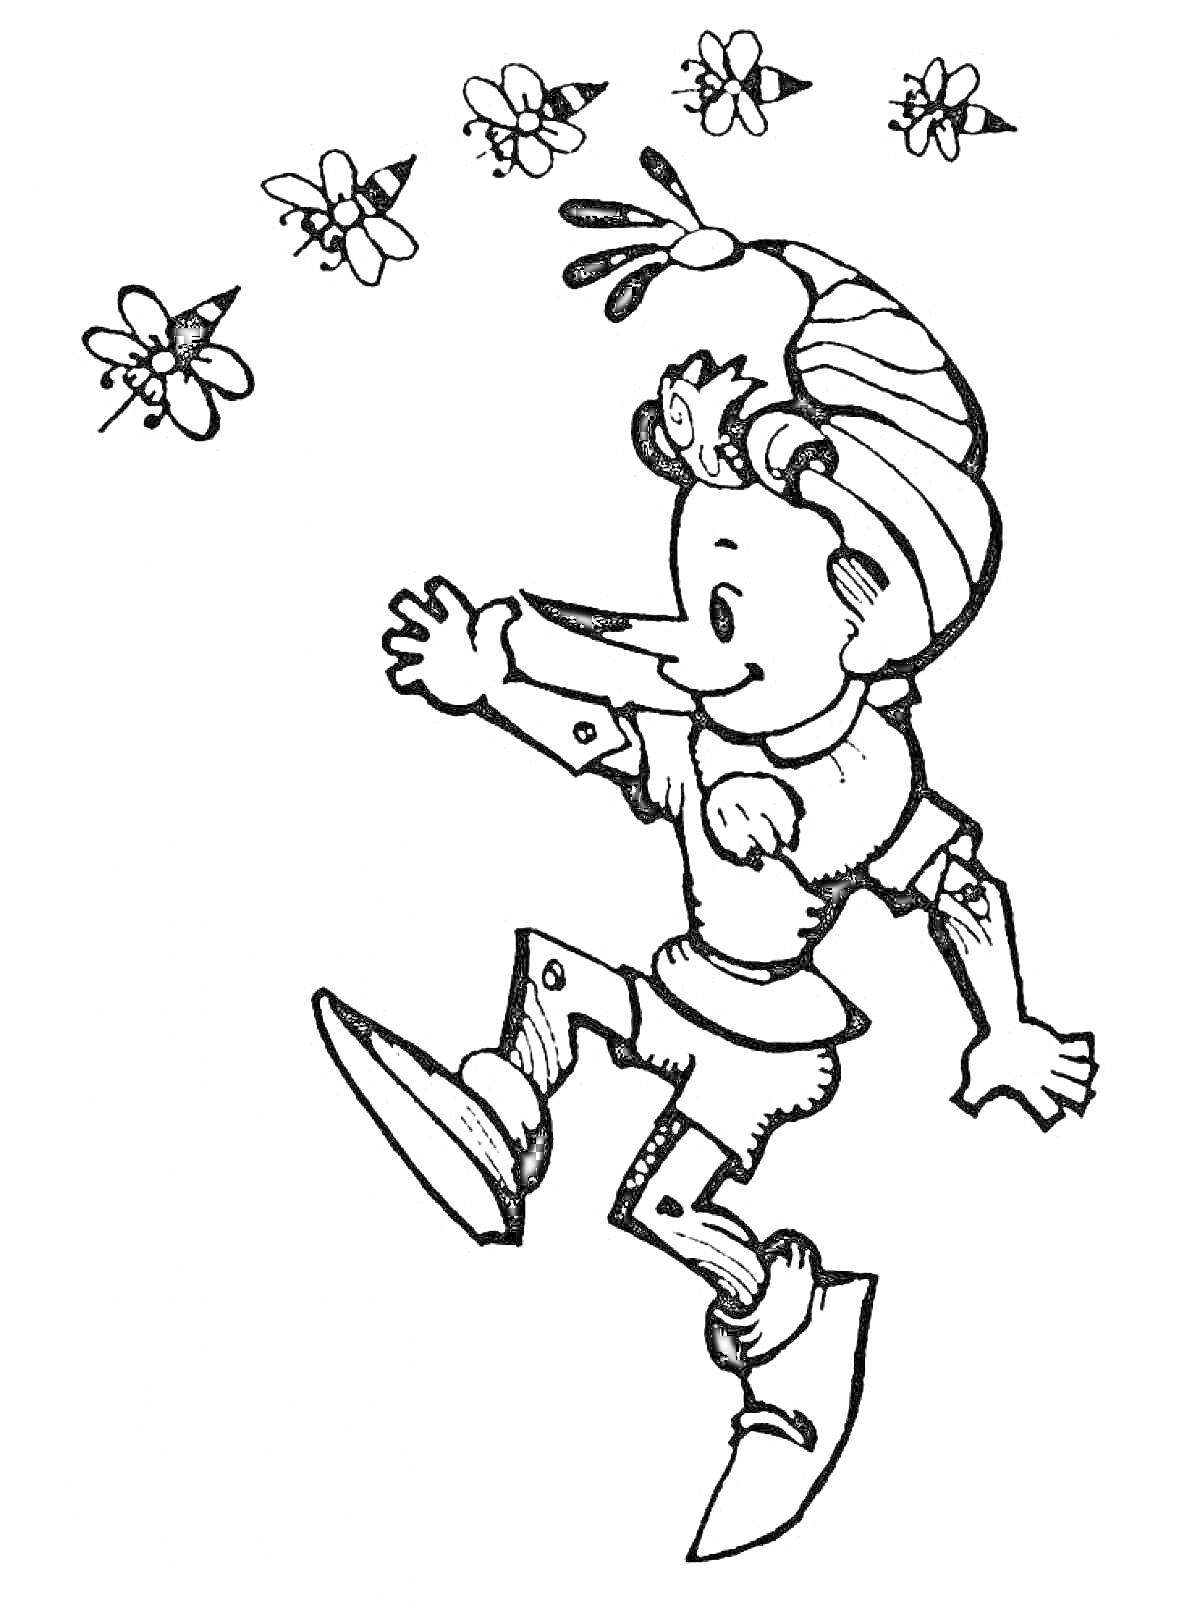 Раскраска Буратино идет, держа руку вверх, над ним летают пчелы